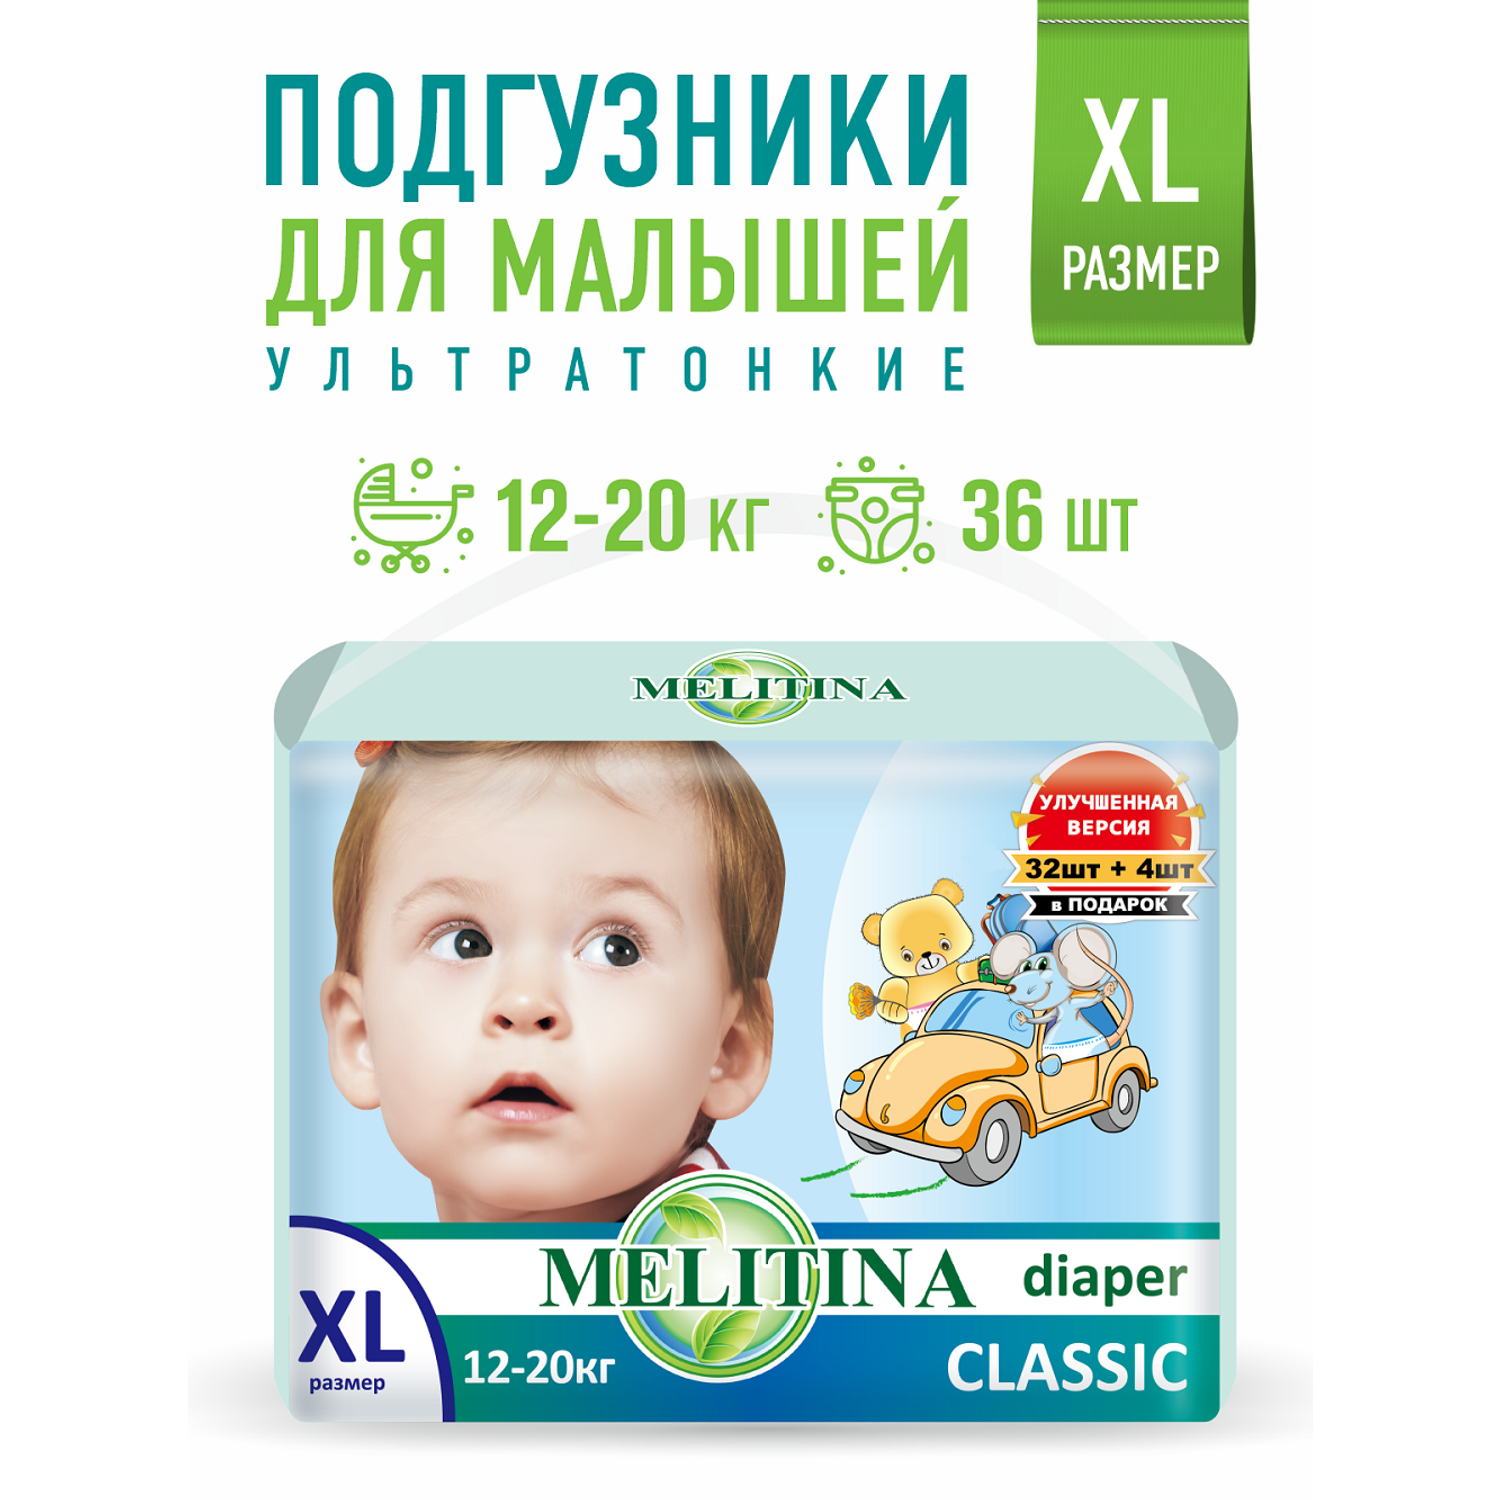 Подгузники Melitina для детей Classic размер XL 12-20 кг 36 шт 50-8432 - фото 1